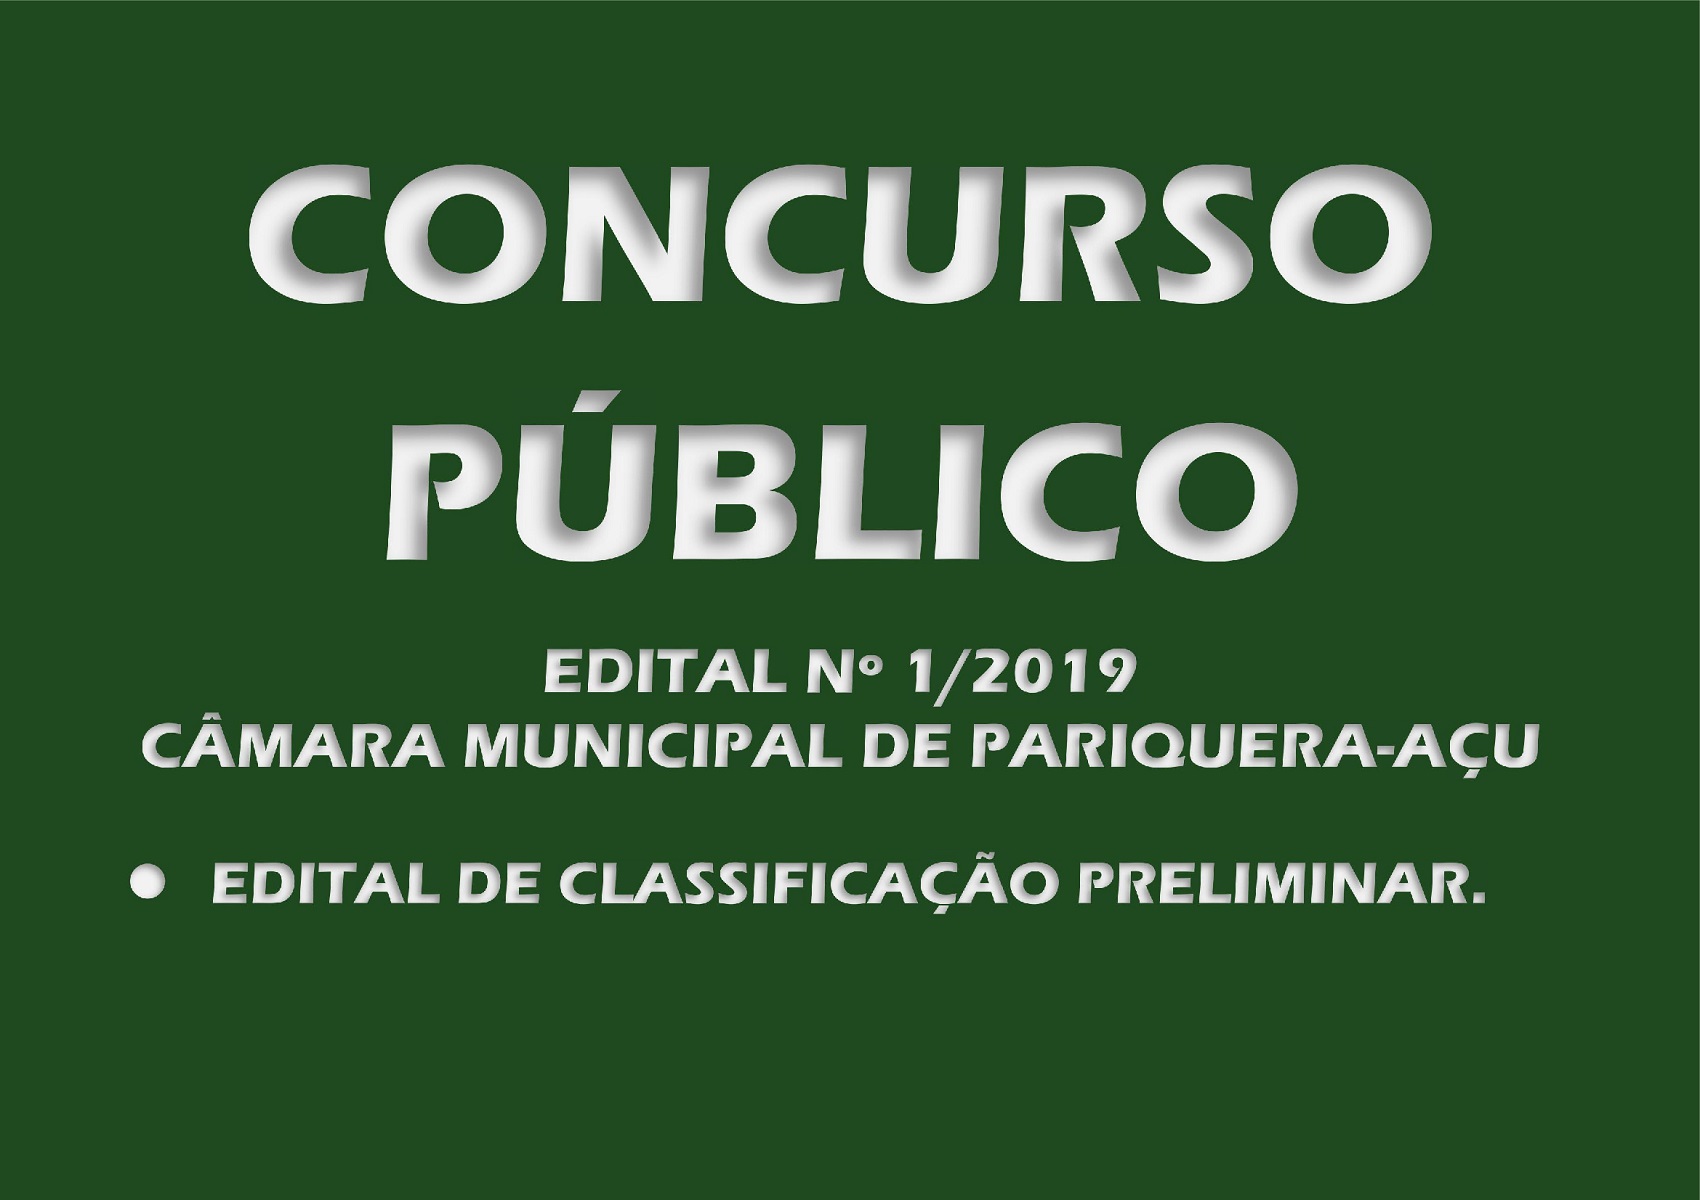 Edital de Classificação Preliminar do Concurso Público nº 1/2019